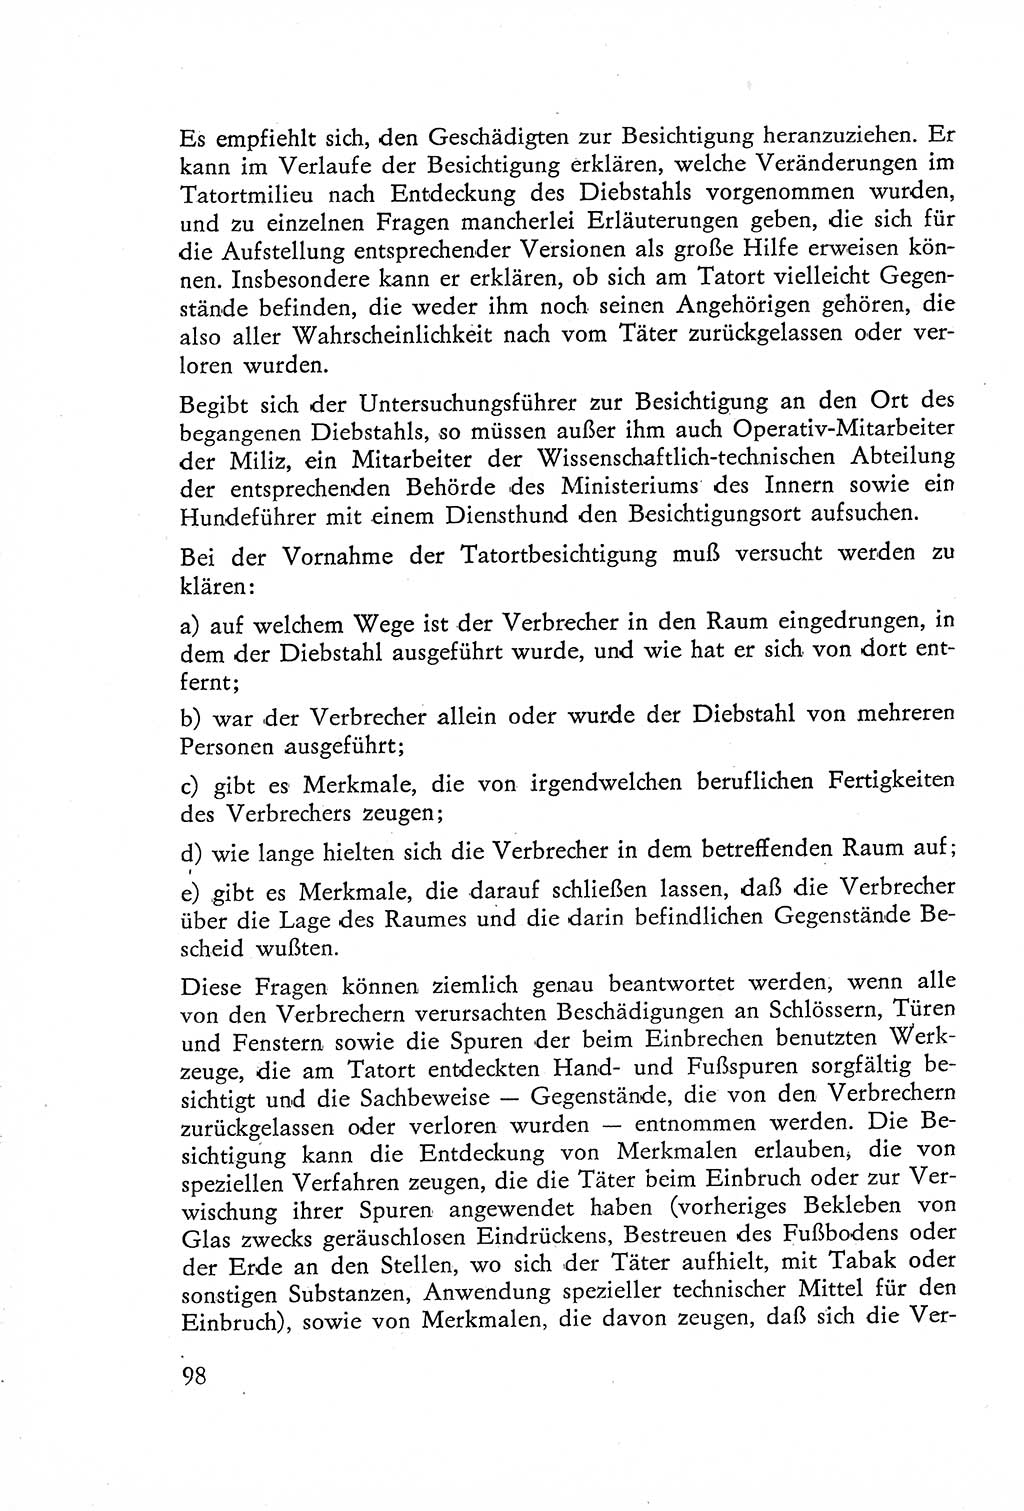 Die Untersuchung einzelner Verbrechensarten [Deutsche Demokratische Republik (DDR)] 1960, Seite 98 (Unters. Verbr.-Art. DDR 1960, S. 98)